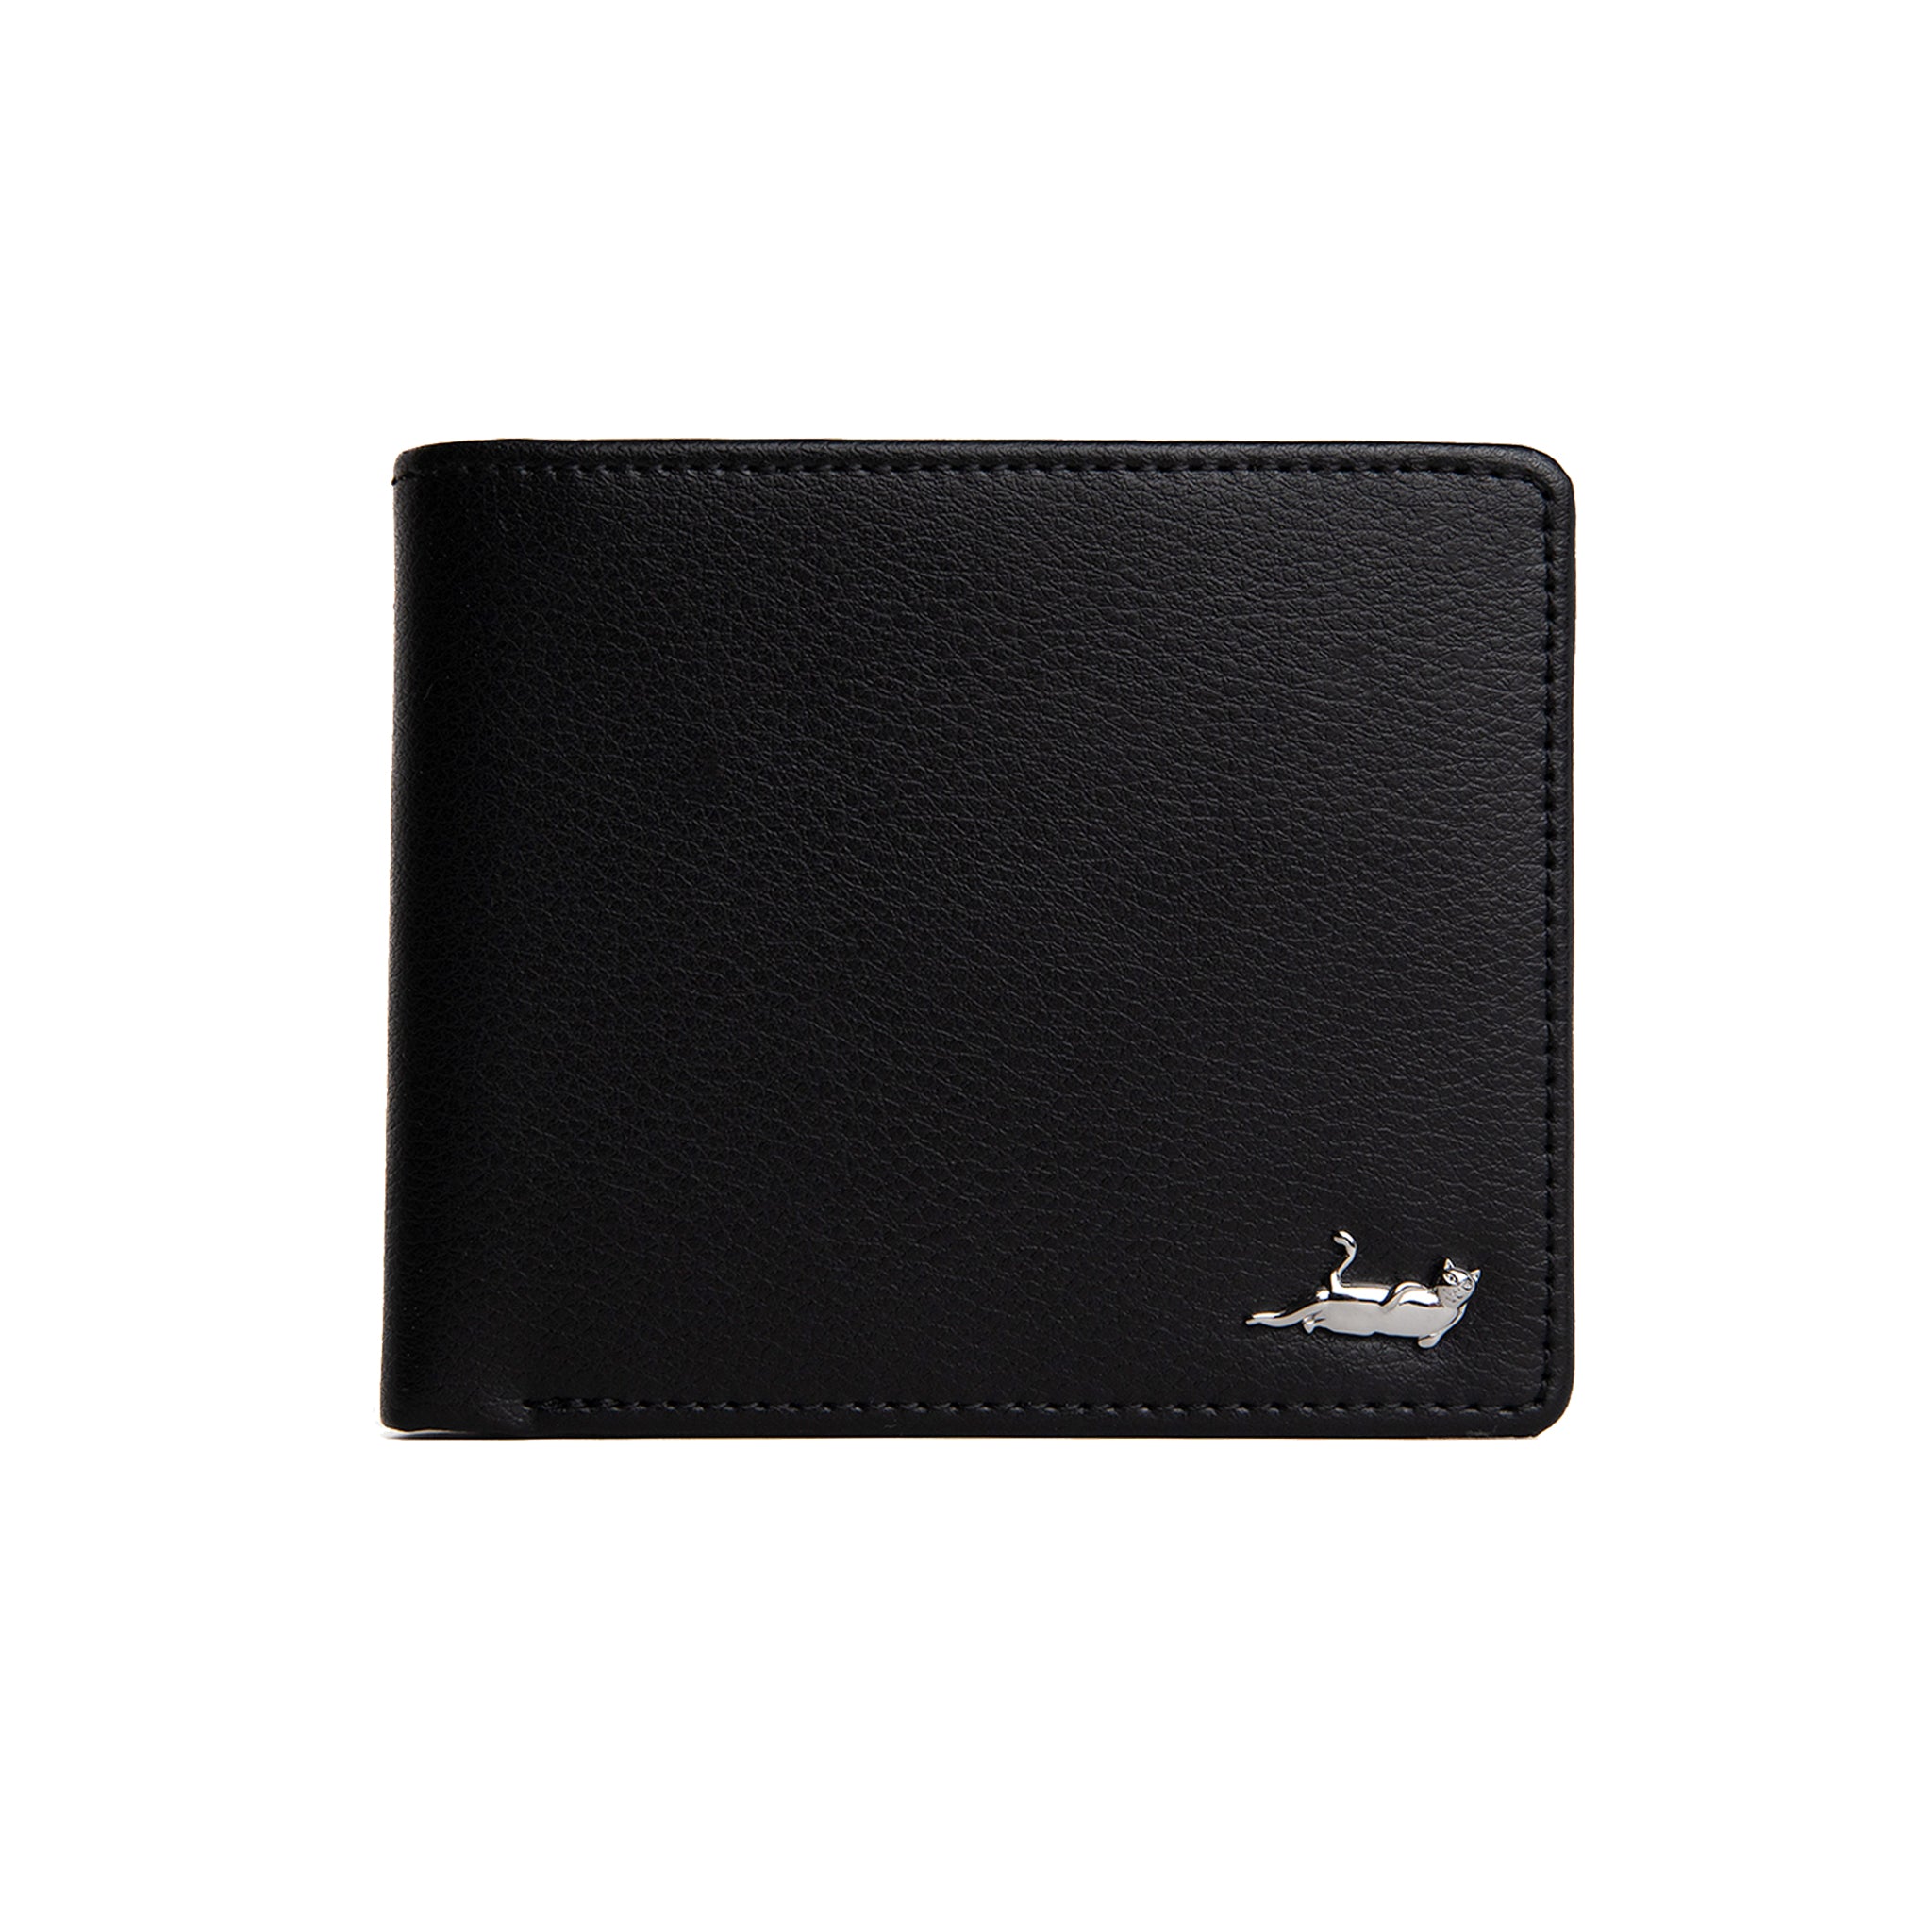 RIPNDIP Lord Nermal Leather Wallet (Black)